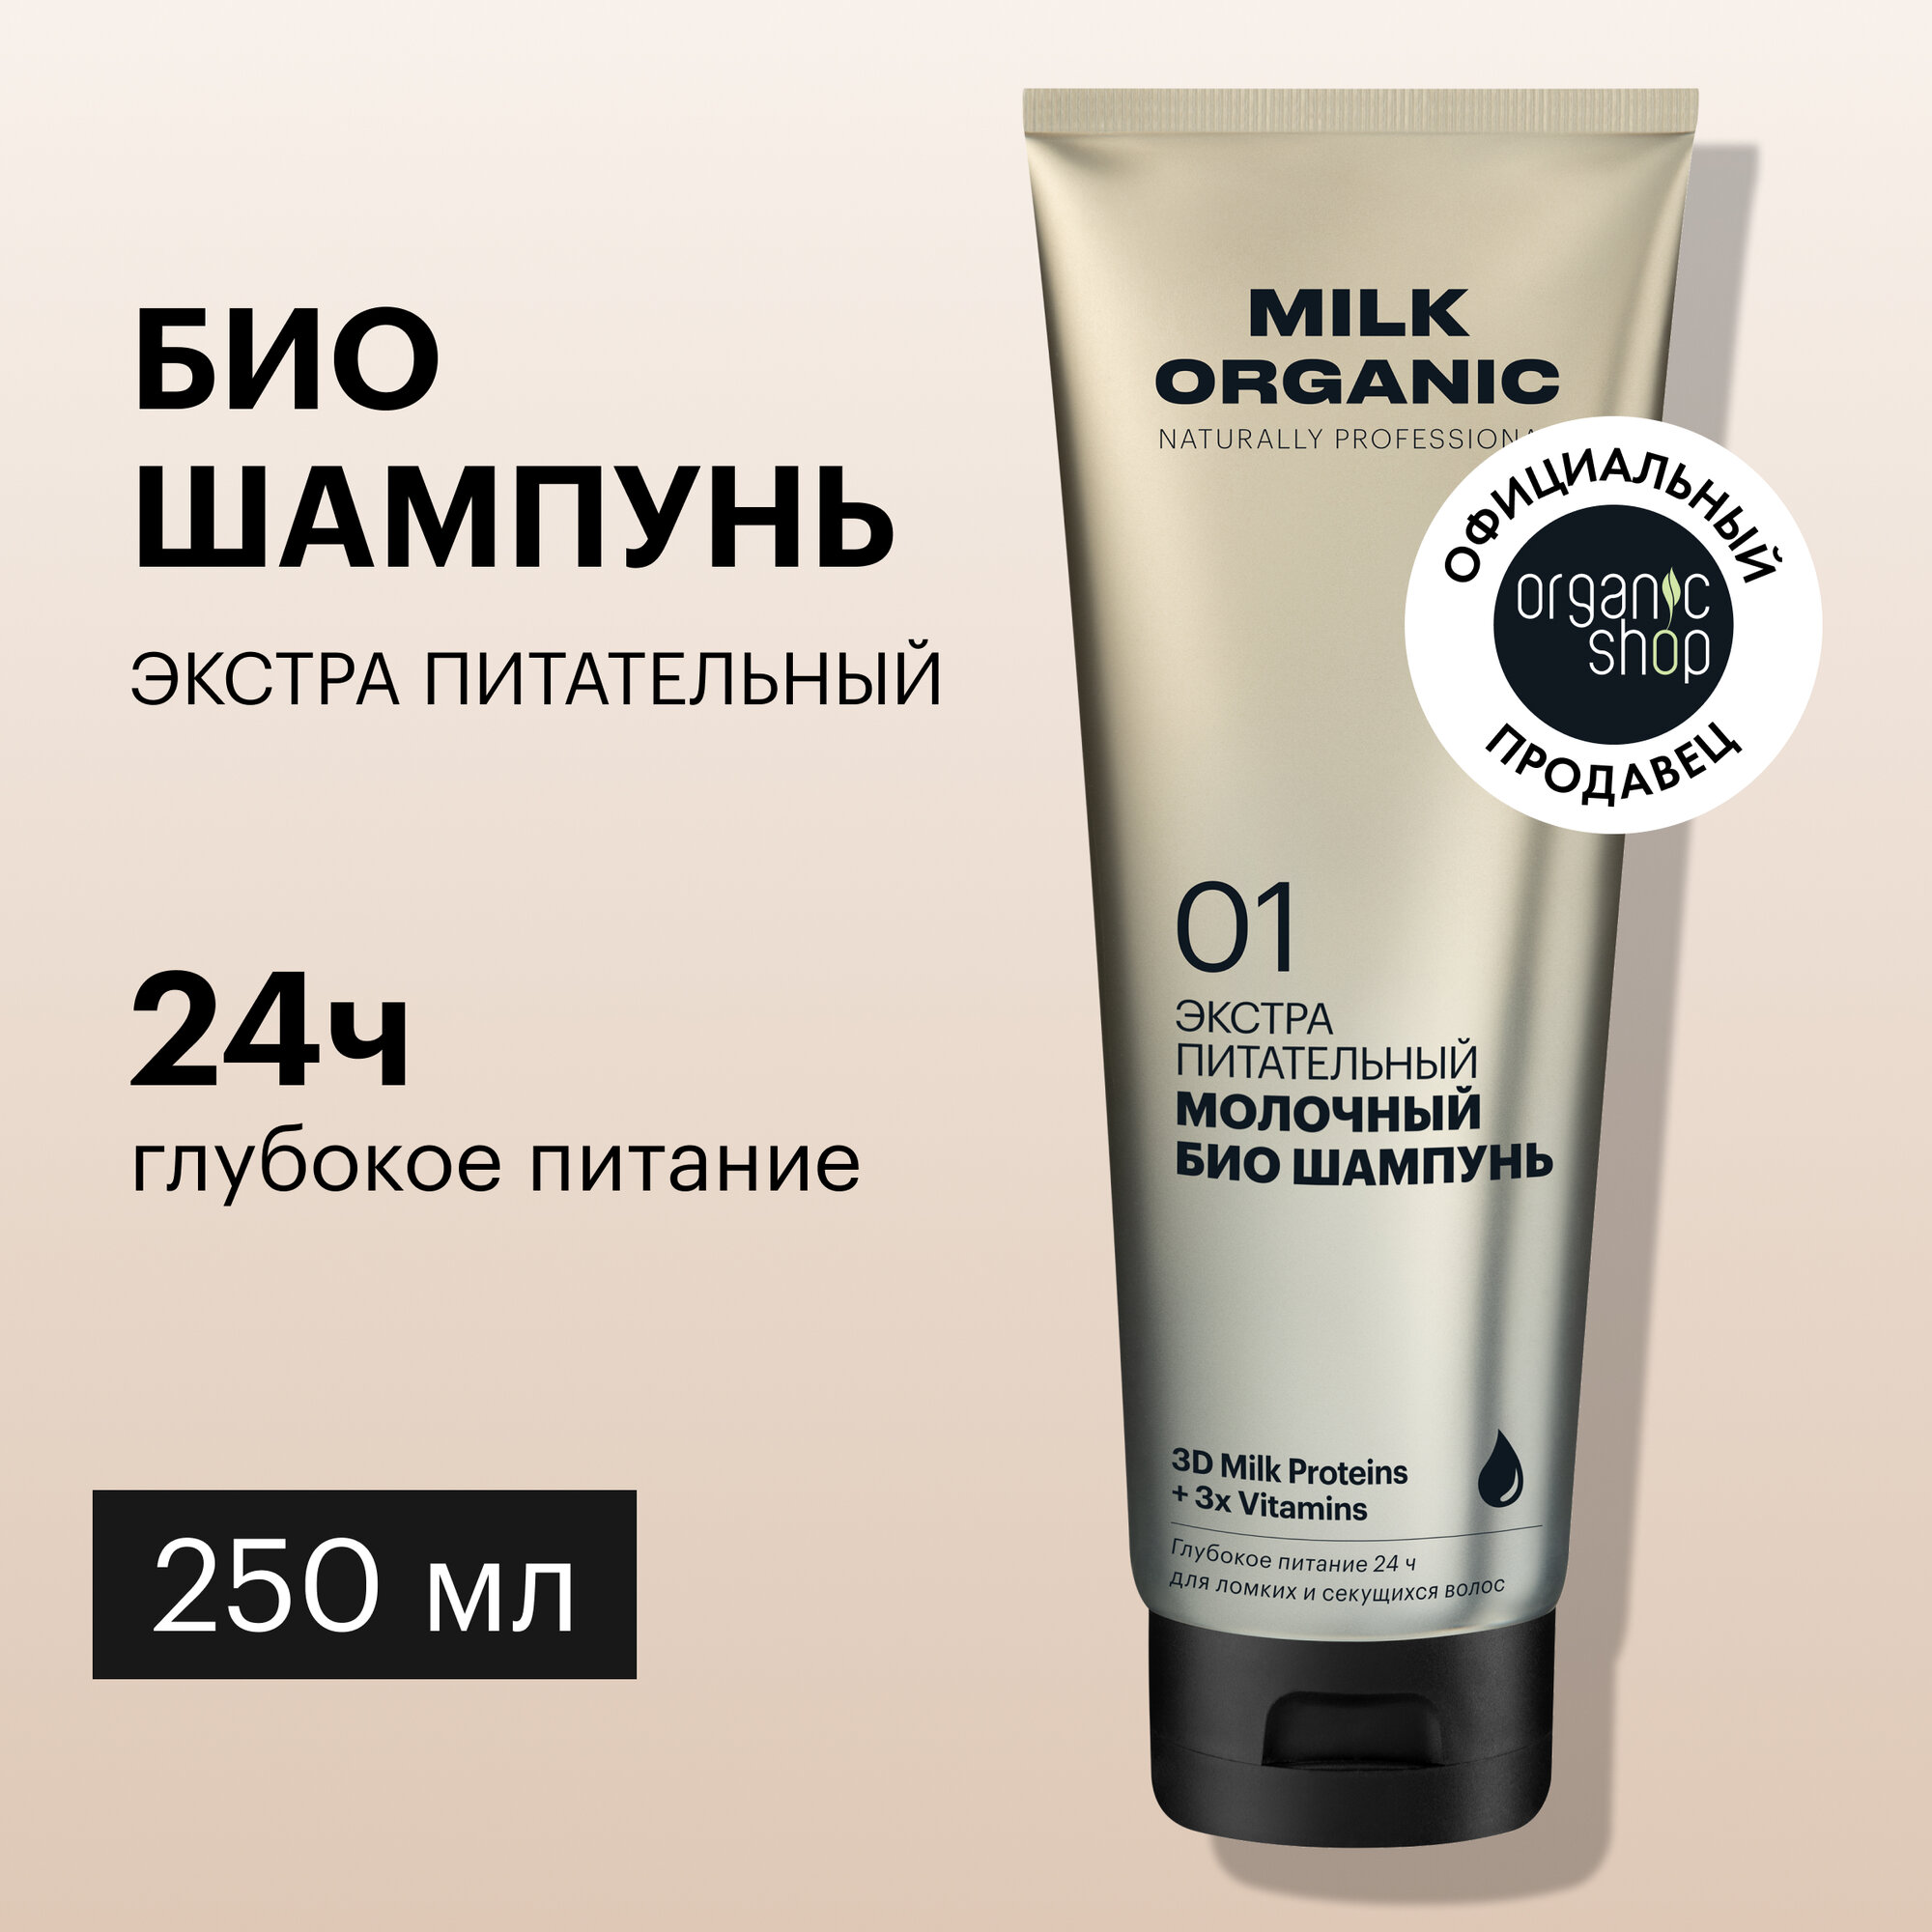 Био шампунь Organic Shop Organic naturally professional Milk для волос Экстра питательный, 250 мл